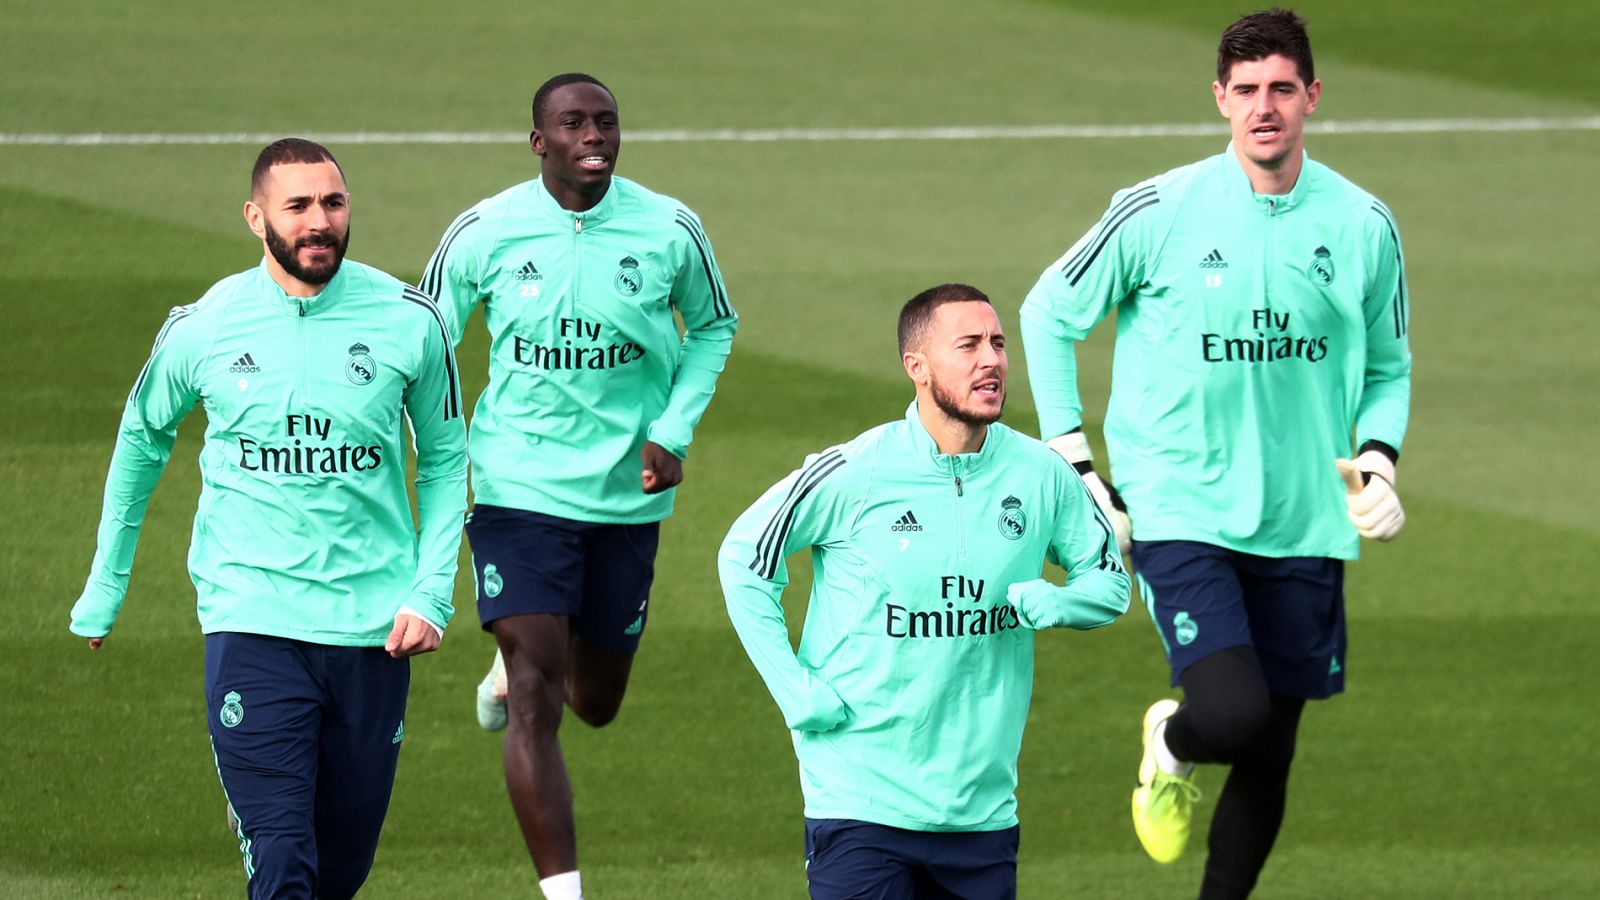 Imagen del entrenamiento del Madrid, con Karim Benzema, Ferland Mendy, Eden Hazard y Thibaut Courtois.